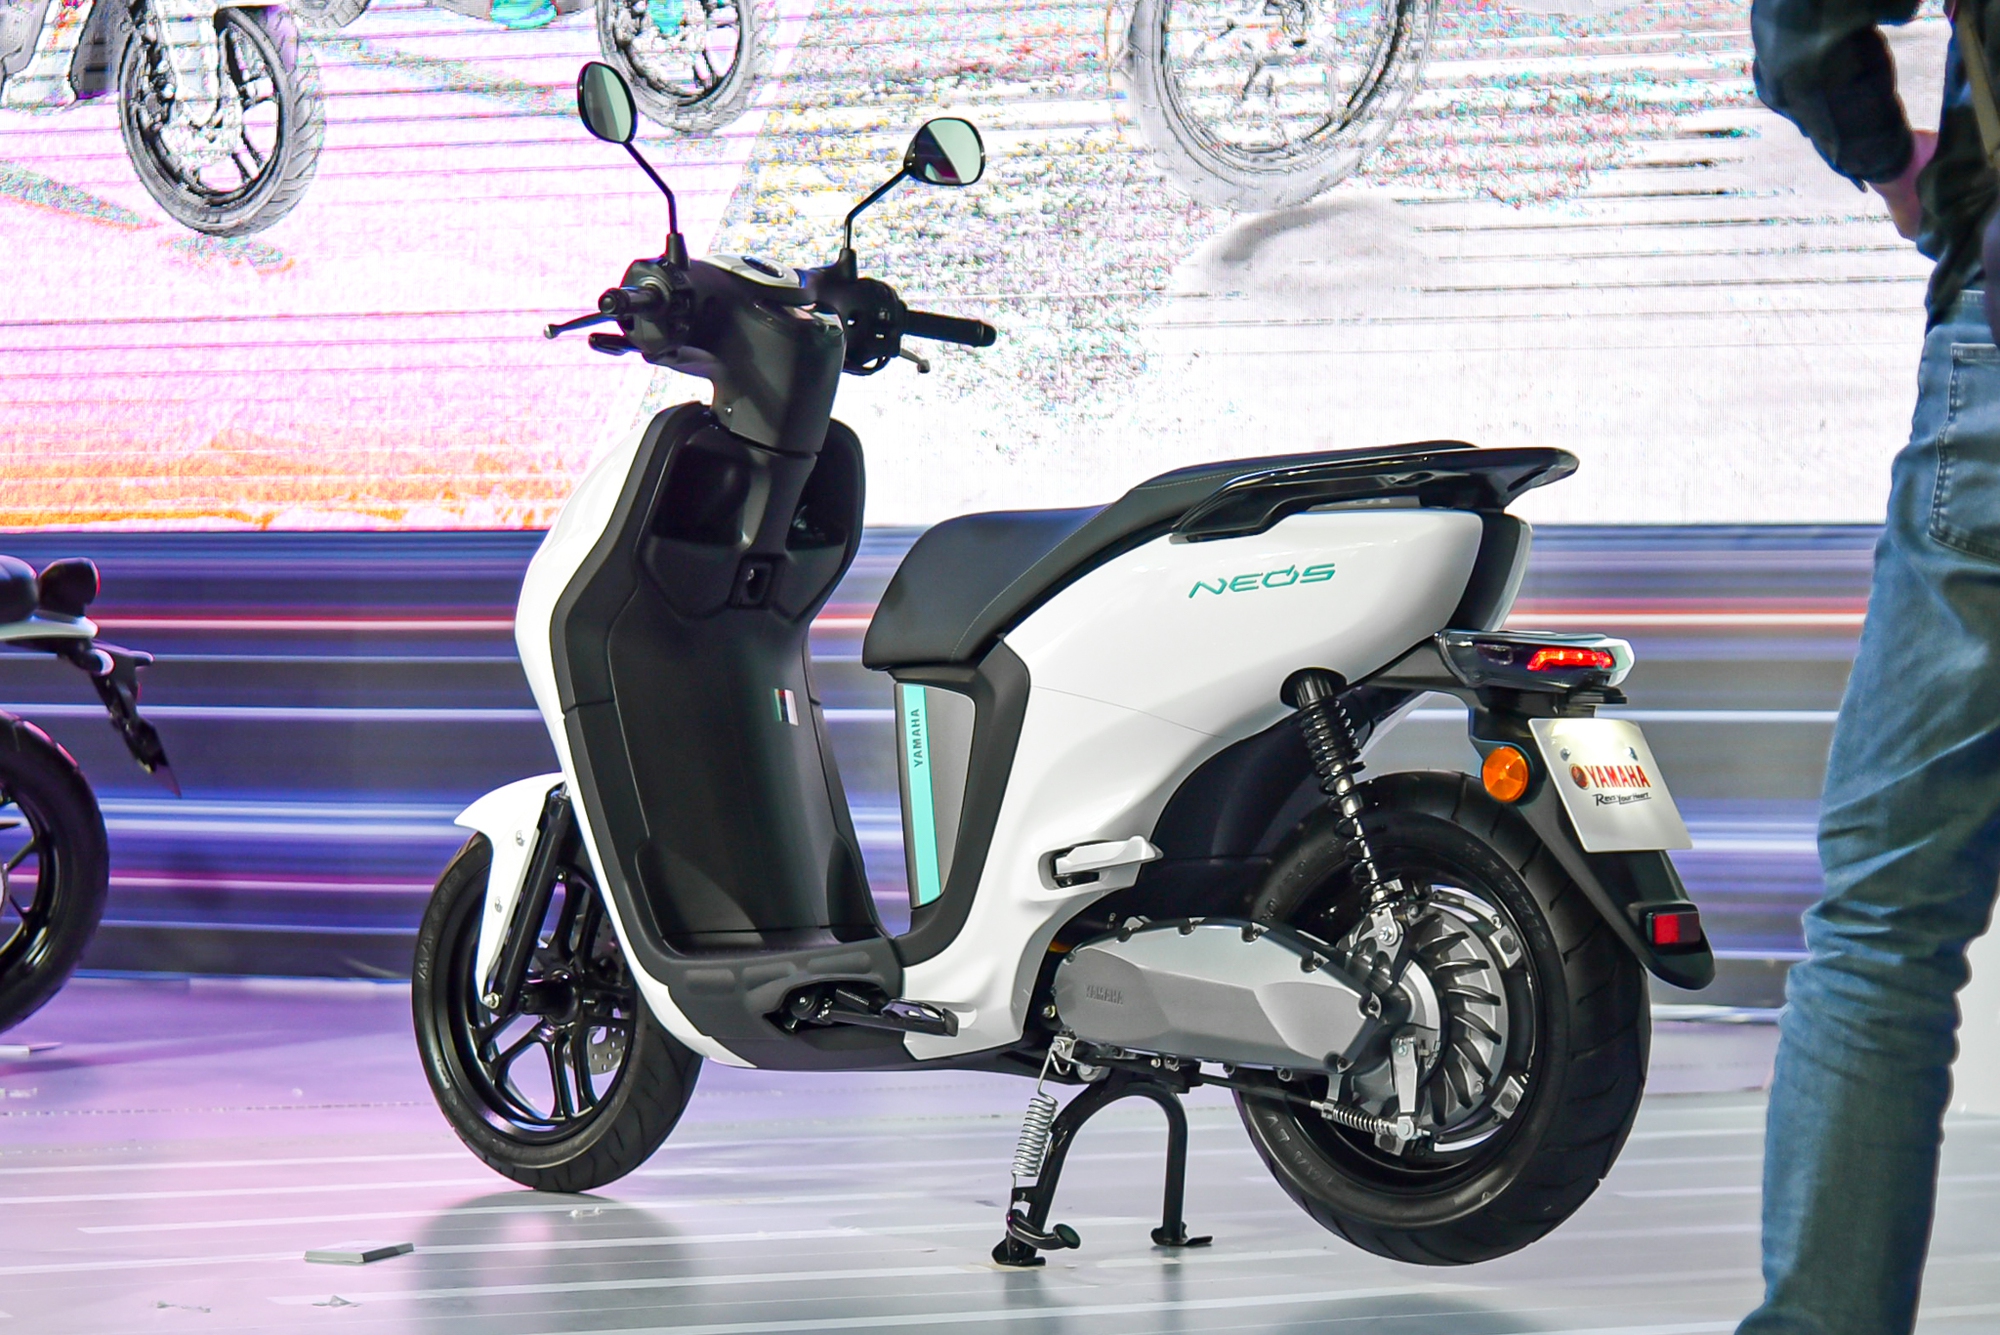 Yamaha Neos ra mắt Việt Nam: Giá 50 triệu đồng, có thể đi tối đa 144 km, cạnh tranh VinFast Vento S - Ảnh 2.